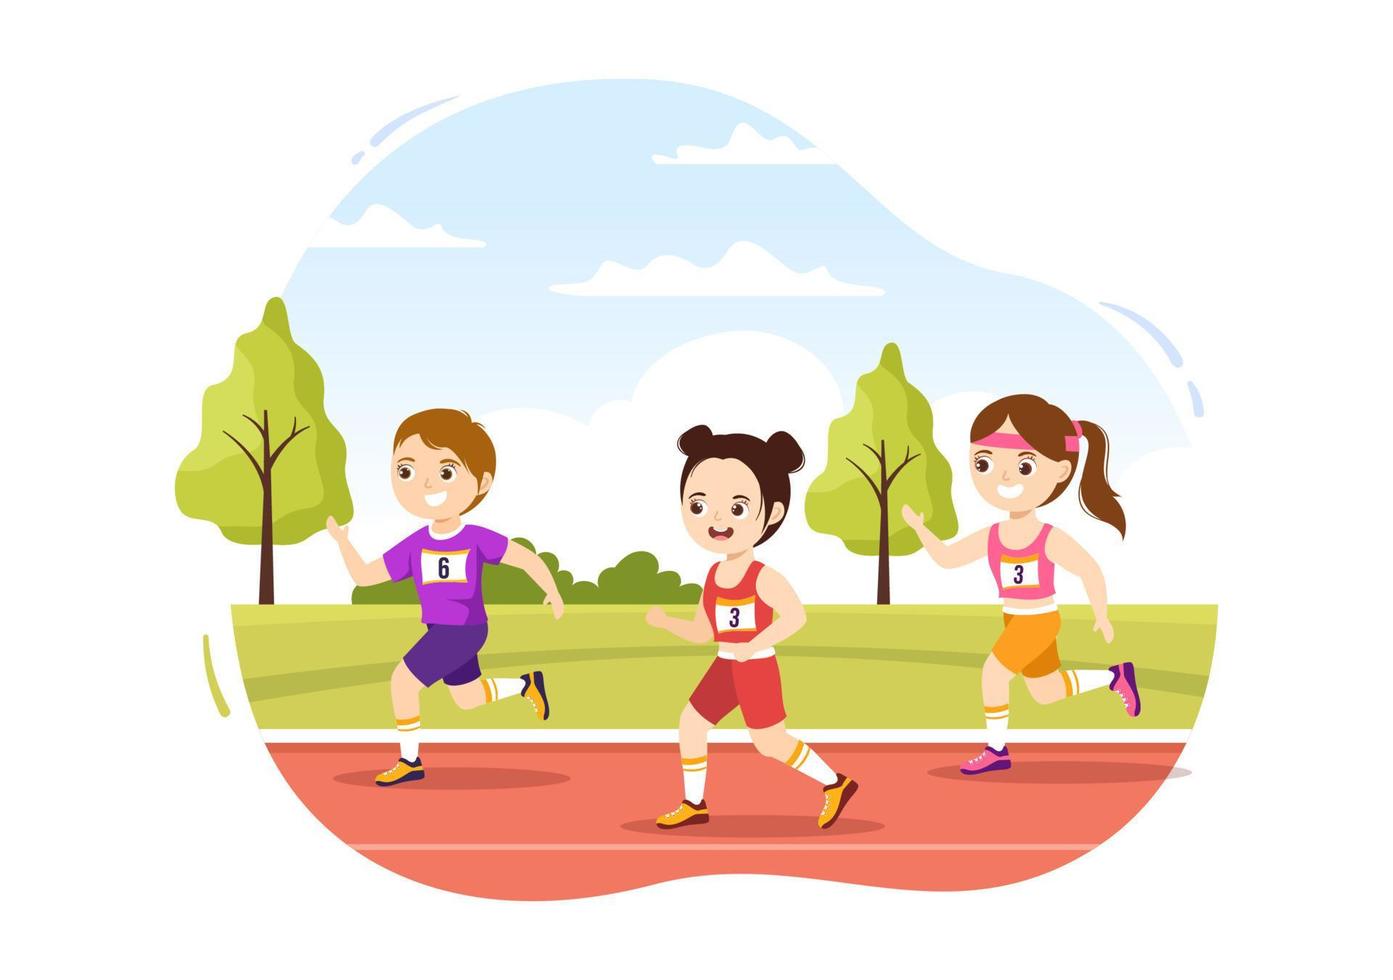 ilustración de carrera de maratón con niños corriendo, trotando en un torneo deportivo y corriendo para llegar a la línea de meta en una plantilla plana dibujada a mano vector